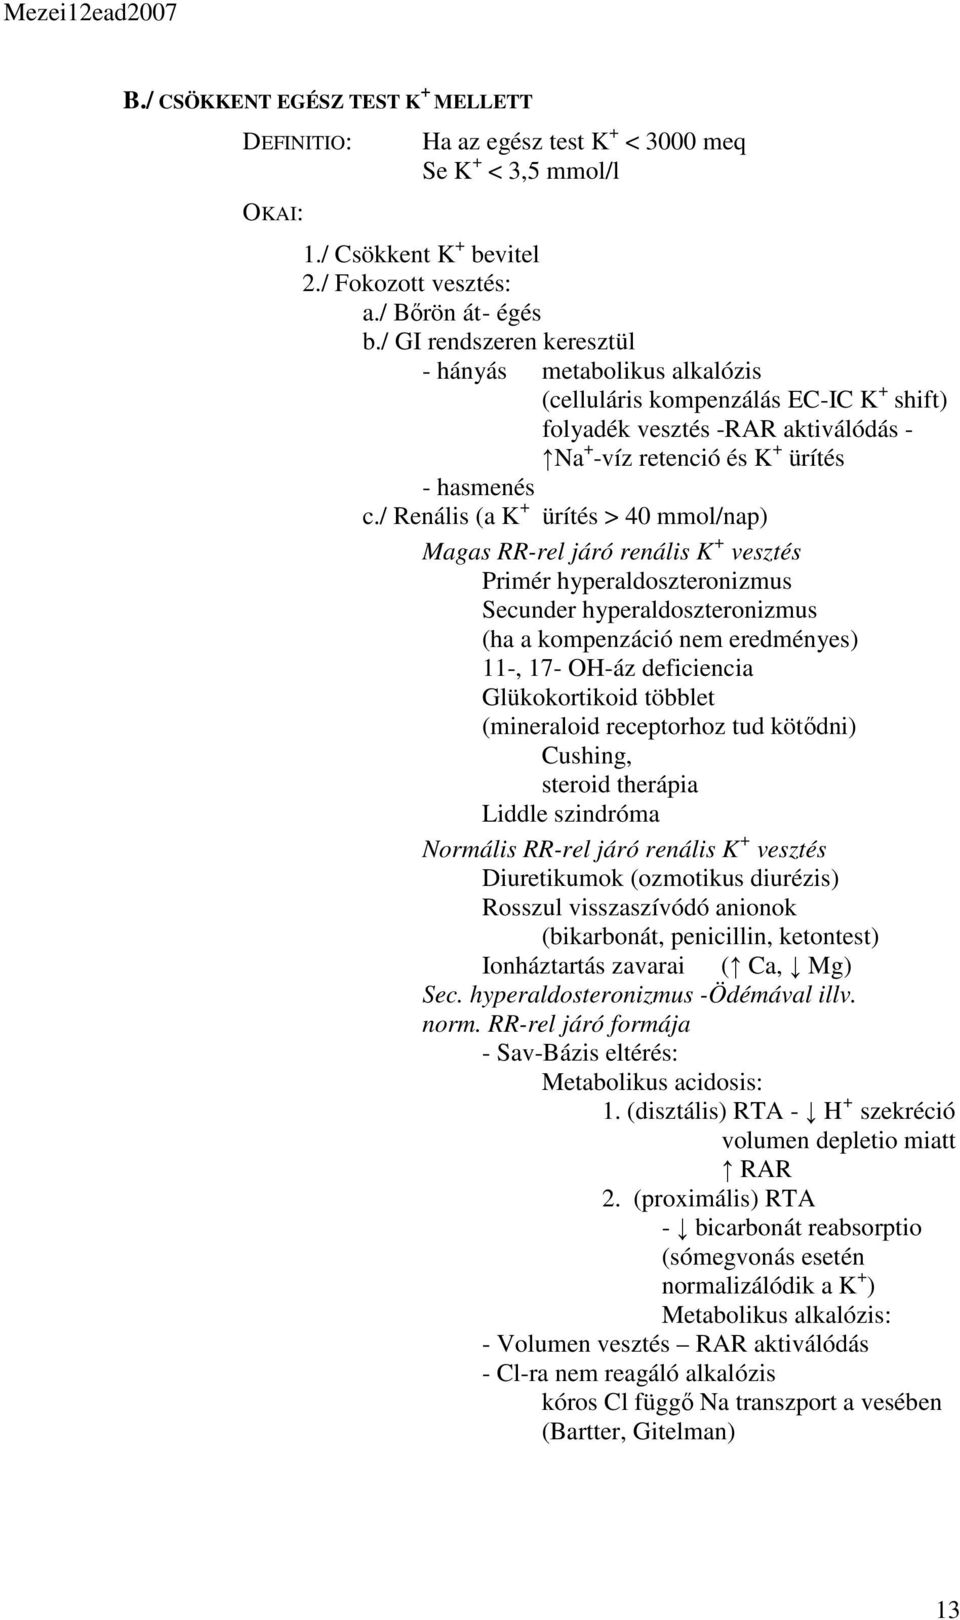 / Renális (a K + ürítés > 40 mmol/nap) Magas RR-rel járó renális K + vesztés Primér hyperaldoszteronizmus Secunder hyperaldoszteronizmus (ha a kompenzáció nem eredményes) 11-, 17- OH-áz deficiencia